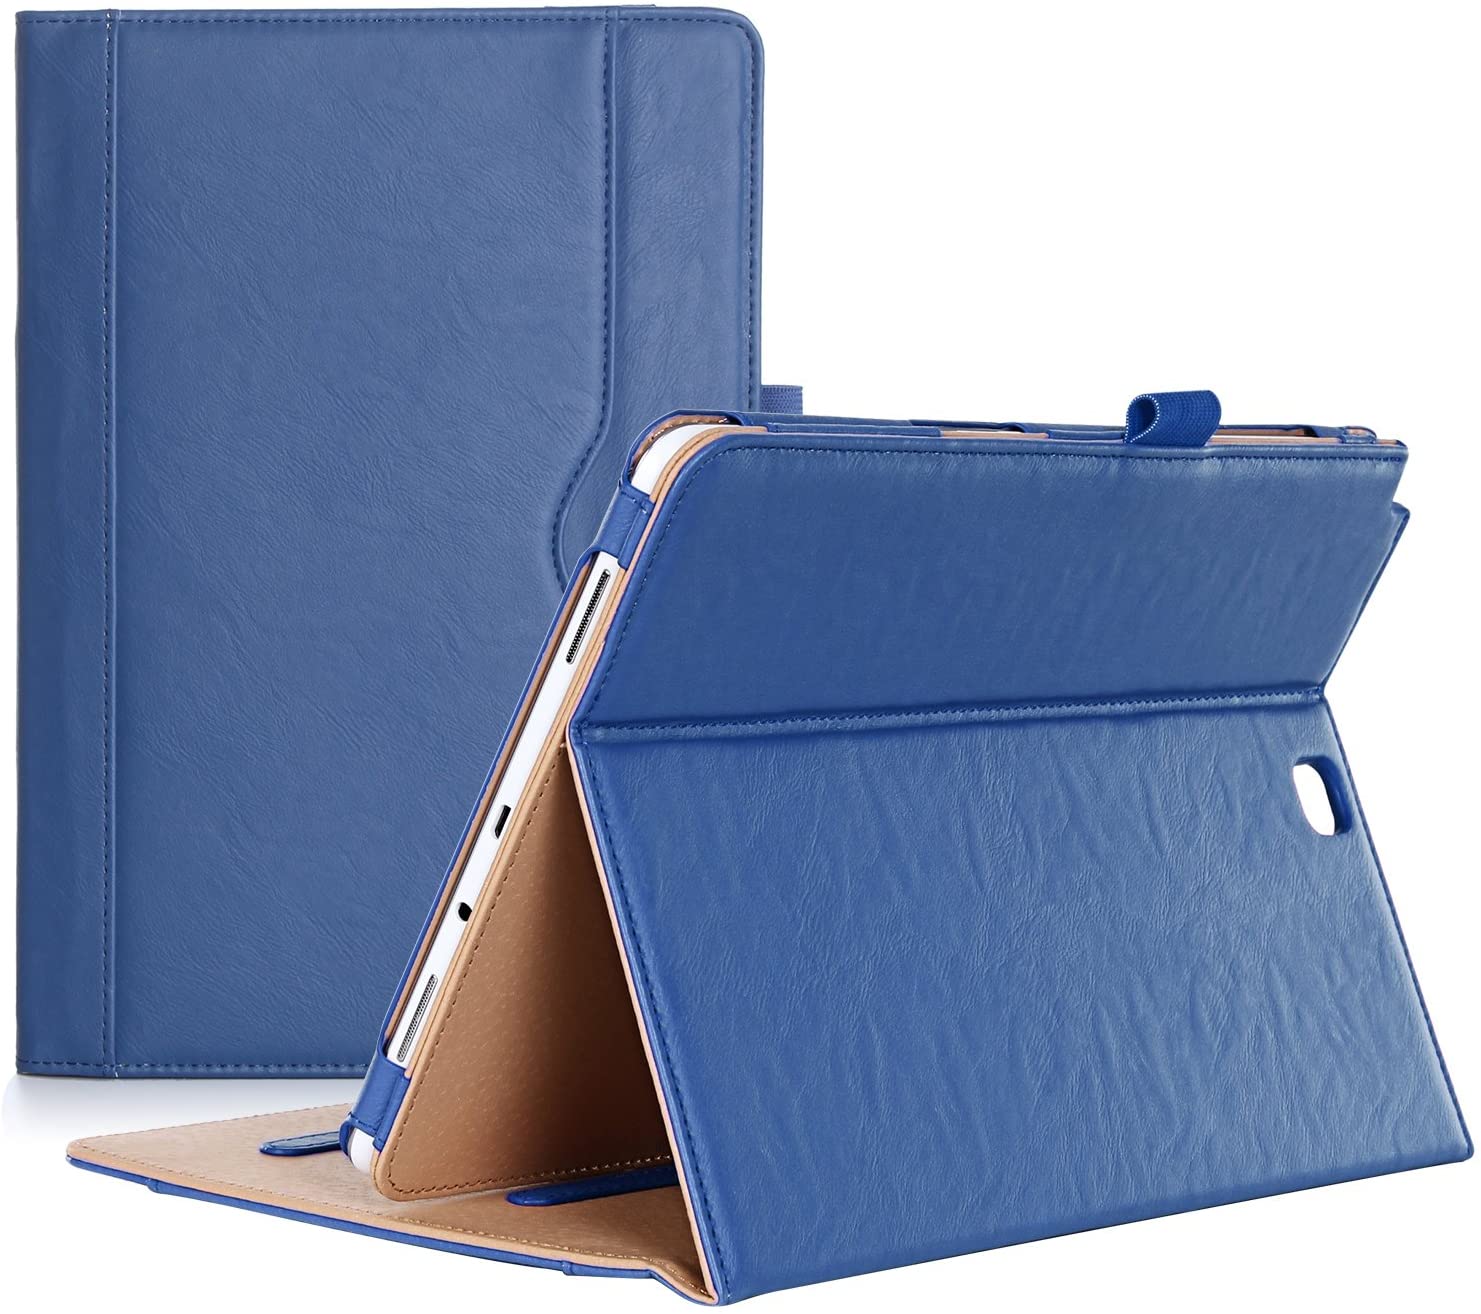 Galaxy Tab A 9.7 2015 T550 Leather Folio Case | ProCase navy